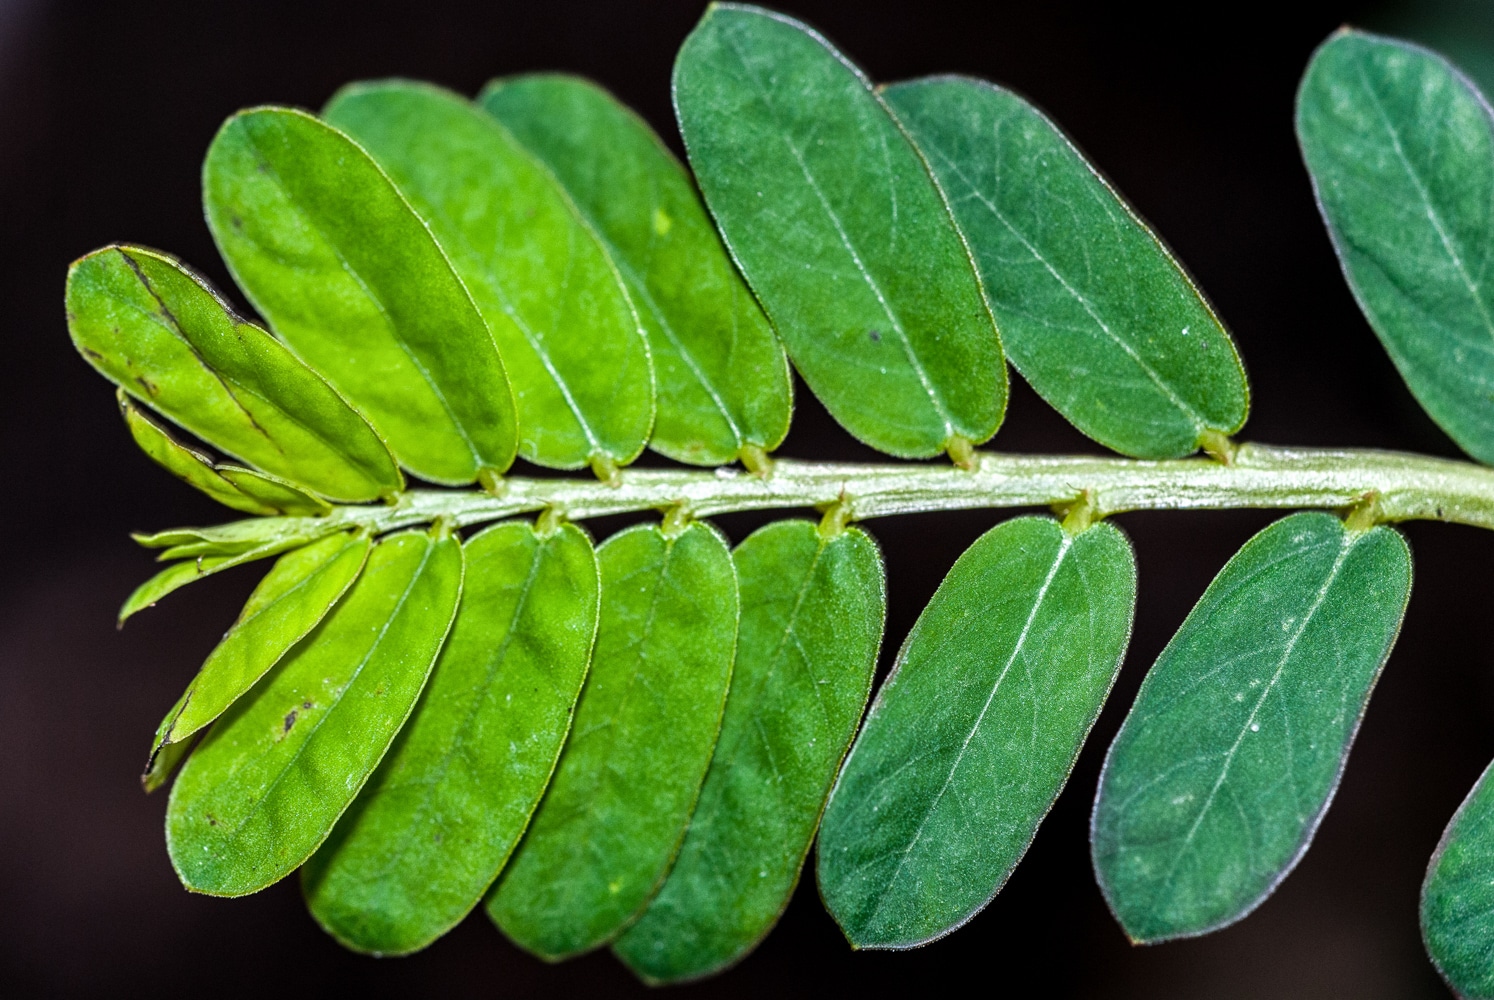 chanca phyllanthus niruri chancapiedra plantas medicinales científico denominación cây común buah pedra amin gramos polvo